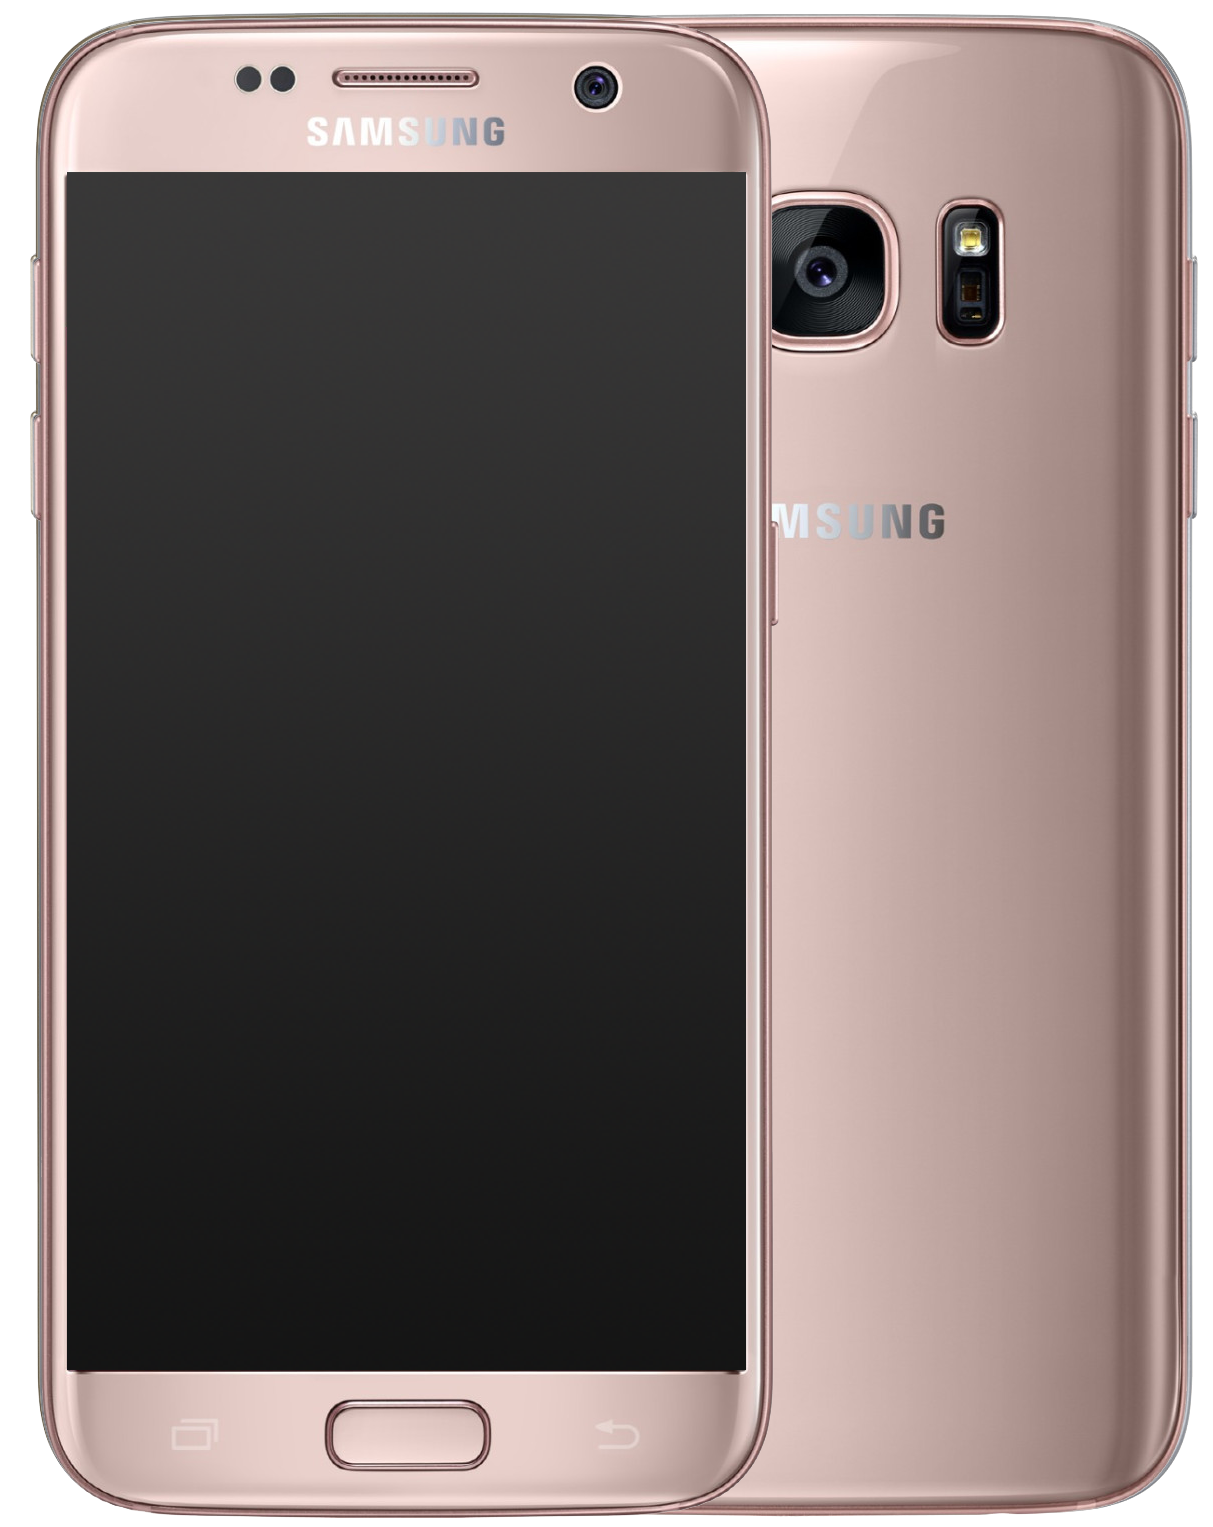 Samsung Galaxy S7 pink gold - Ohne Vertrag